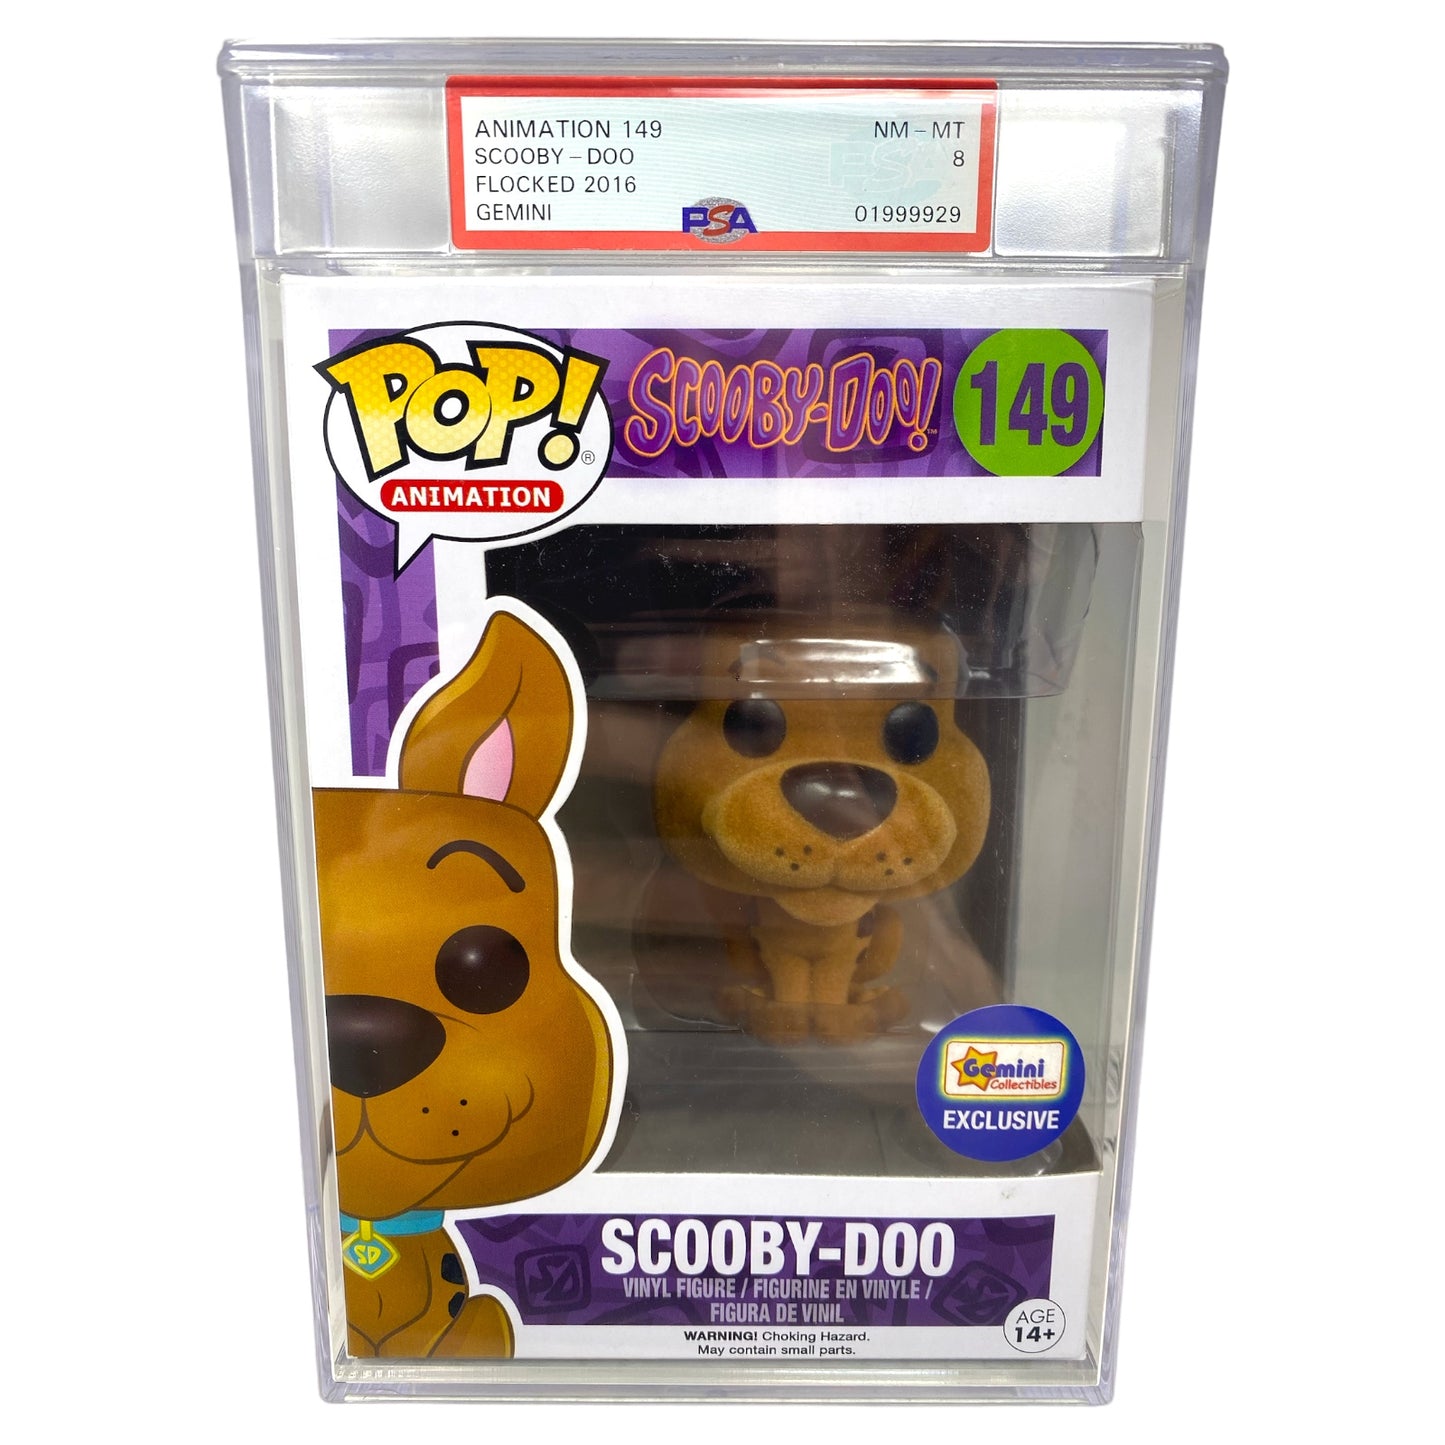 PSA Grade 8 2016 Flocked Scooby-Doo 149 Gemini Exclusive